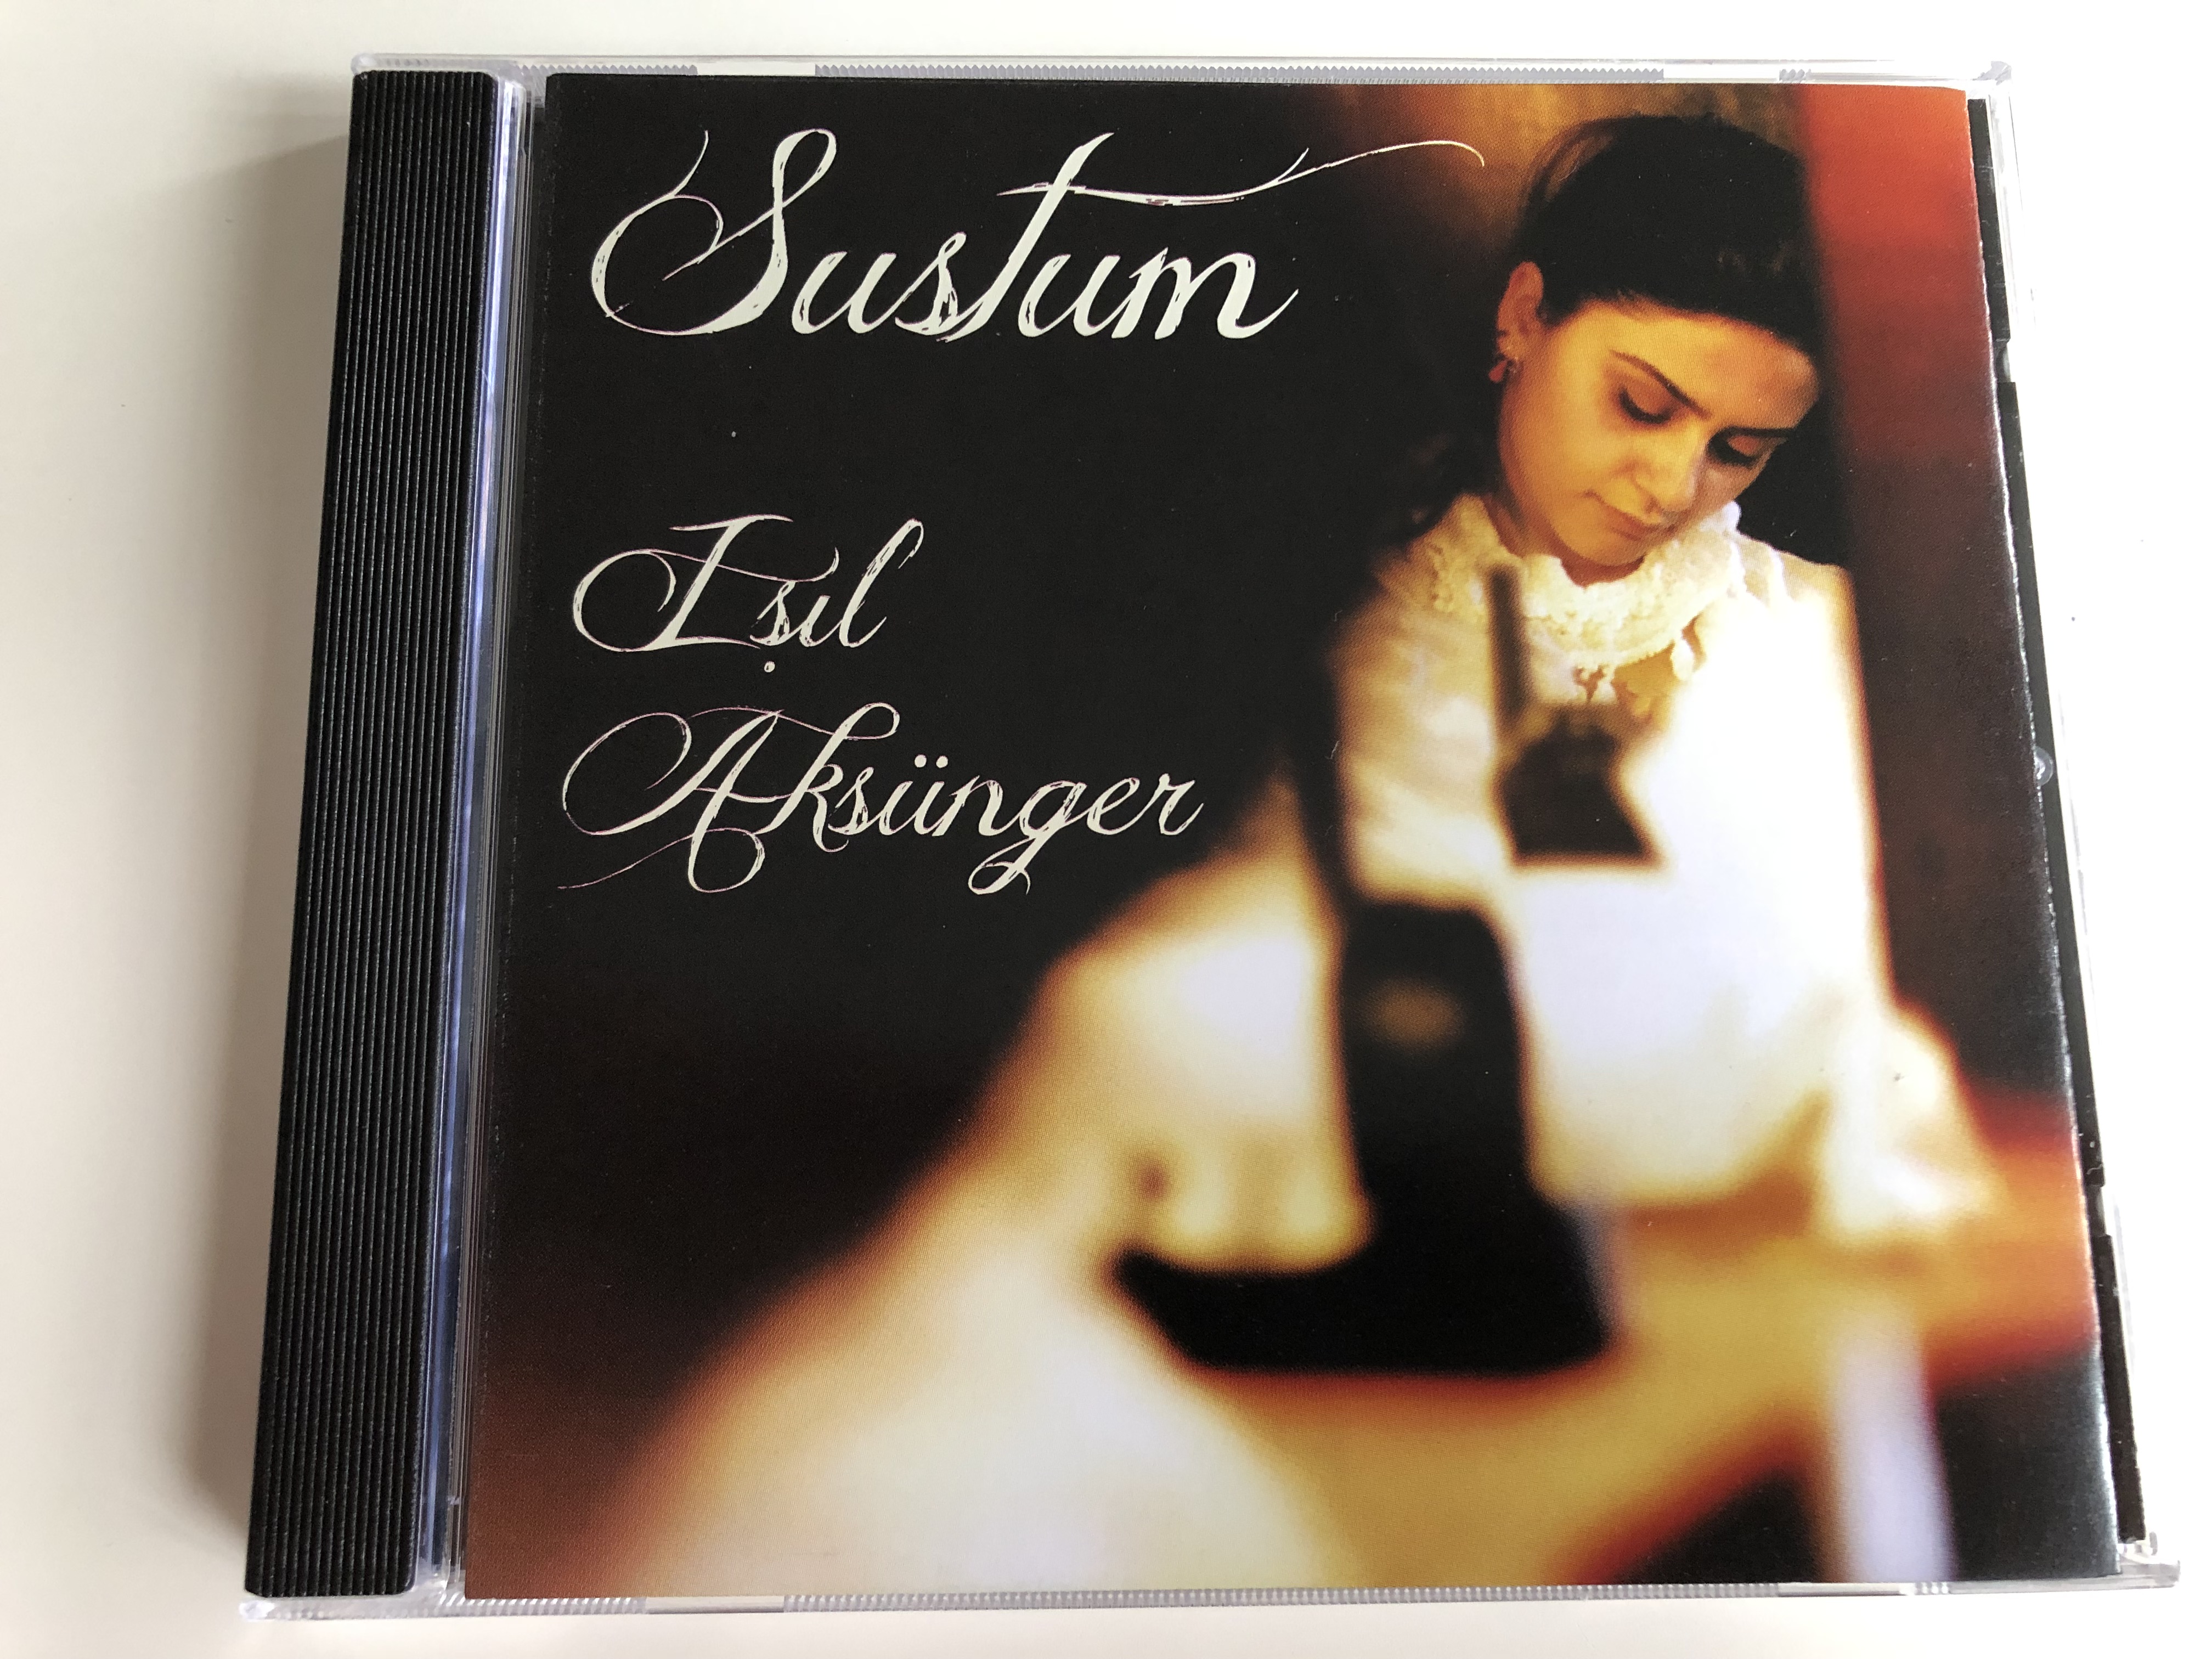 sustum-i-l-aks-nger-turkish-cd-2013-christian-songs-and-praises-1-.jpg